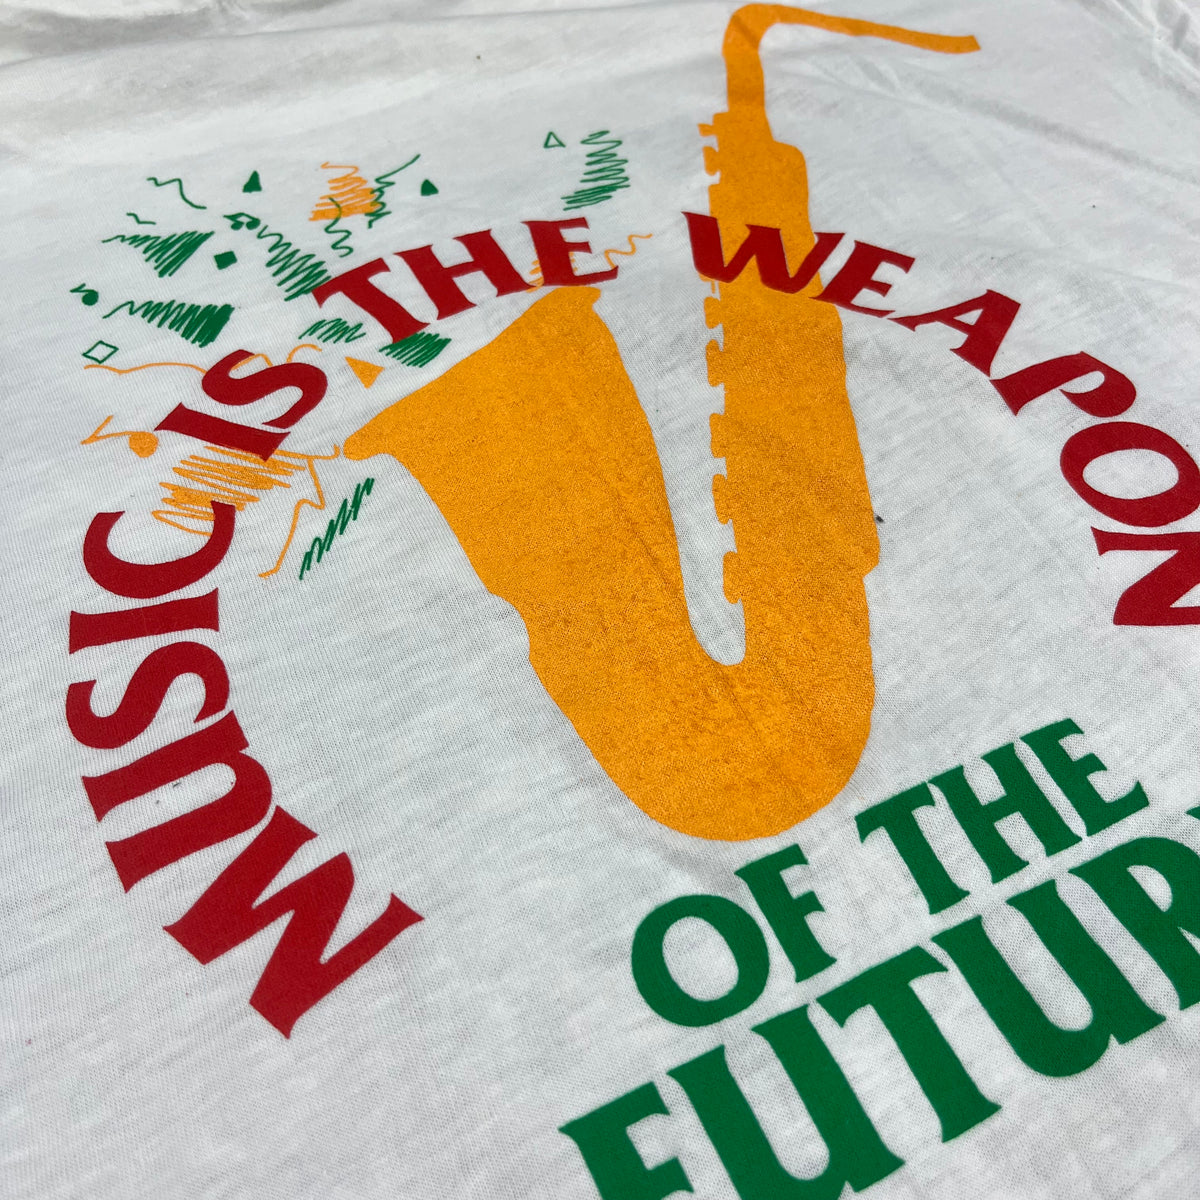 Vintage Fela Kuti &quot;Music Is The Weapon&quot; 1986 T-Shirt